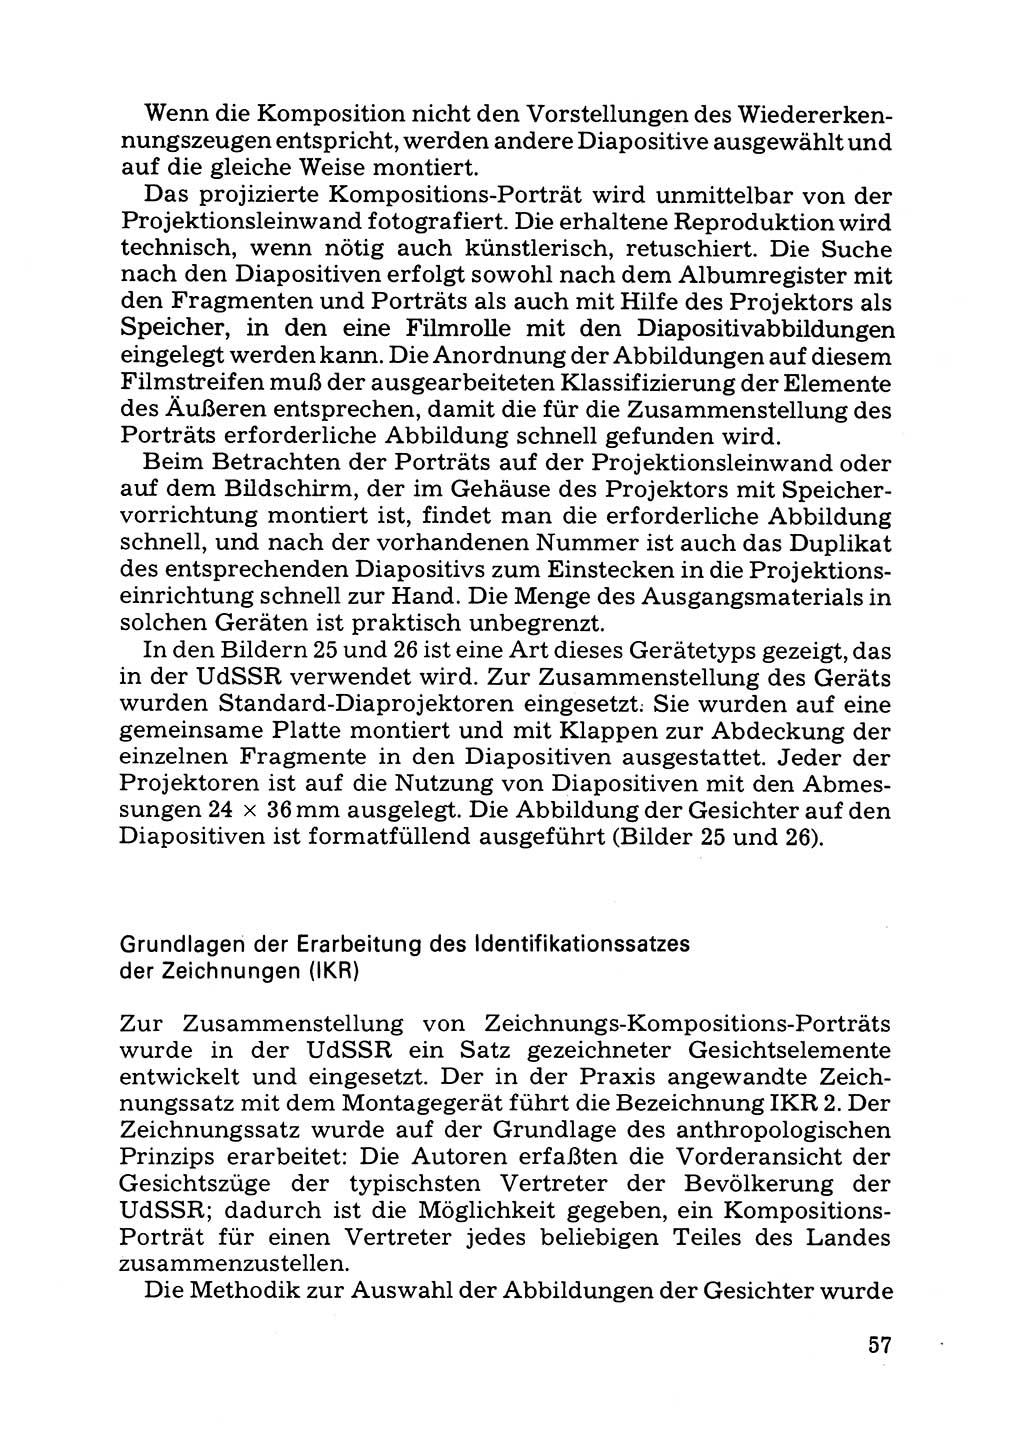 Das subjektive Porträt [Deutsche Demokratische Republik (DDR)] 1981, Seite 57 (Subj. Port. DDR 1981, S. 57)